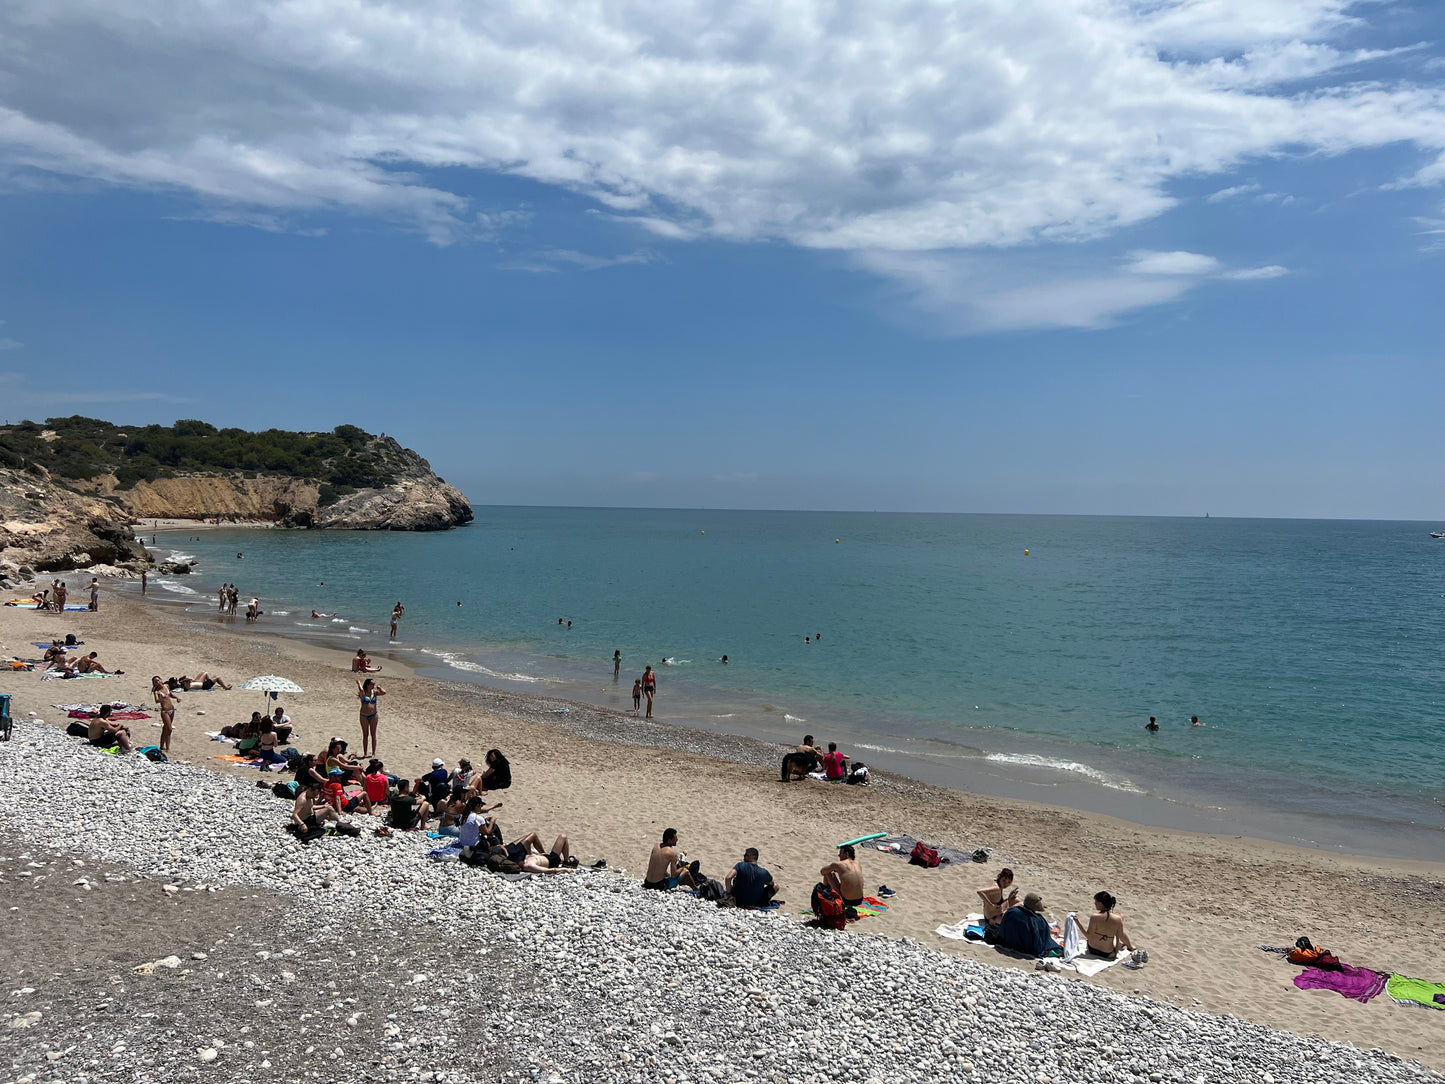 🔒COMPLETO 🌞 Preciosa ruta costera Vilanova - Sitges 🌊 Fácil 9km 💪 ➸ 📅 Domingo, 21.04.24 💰20€